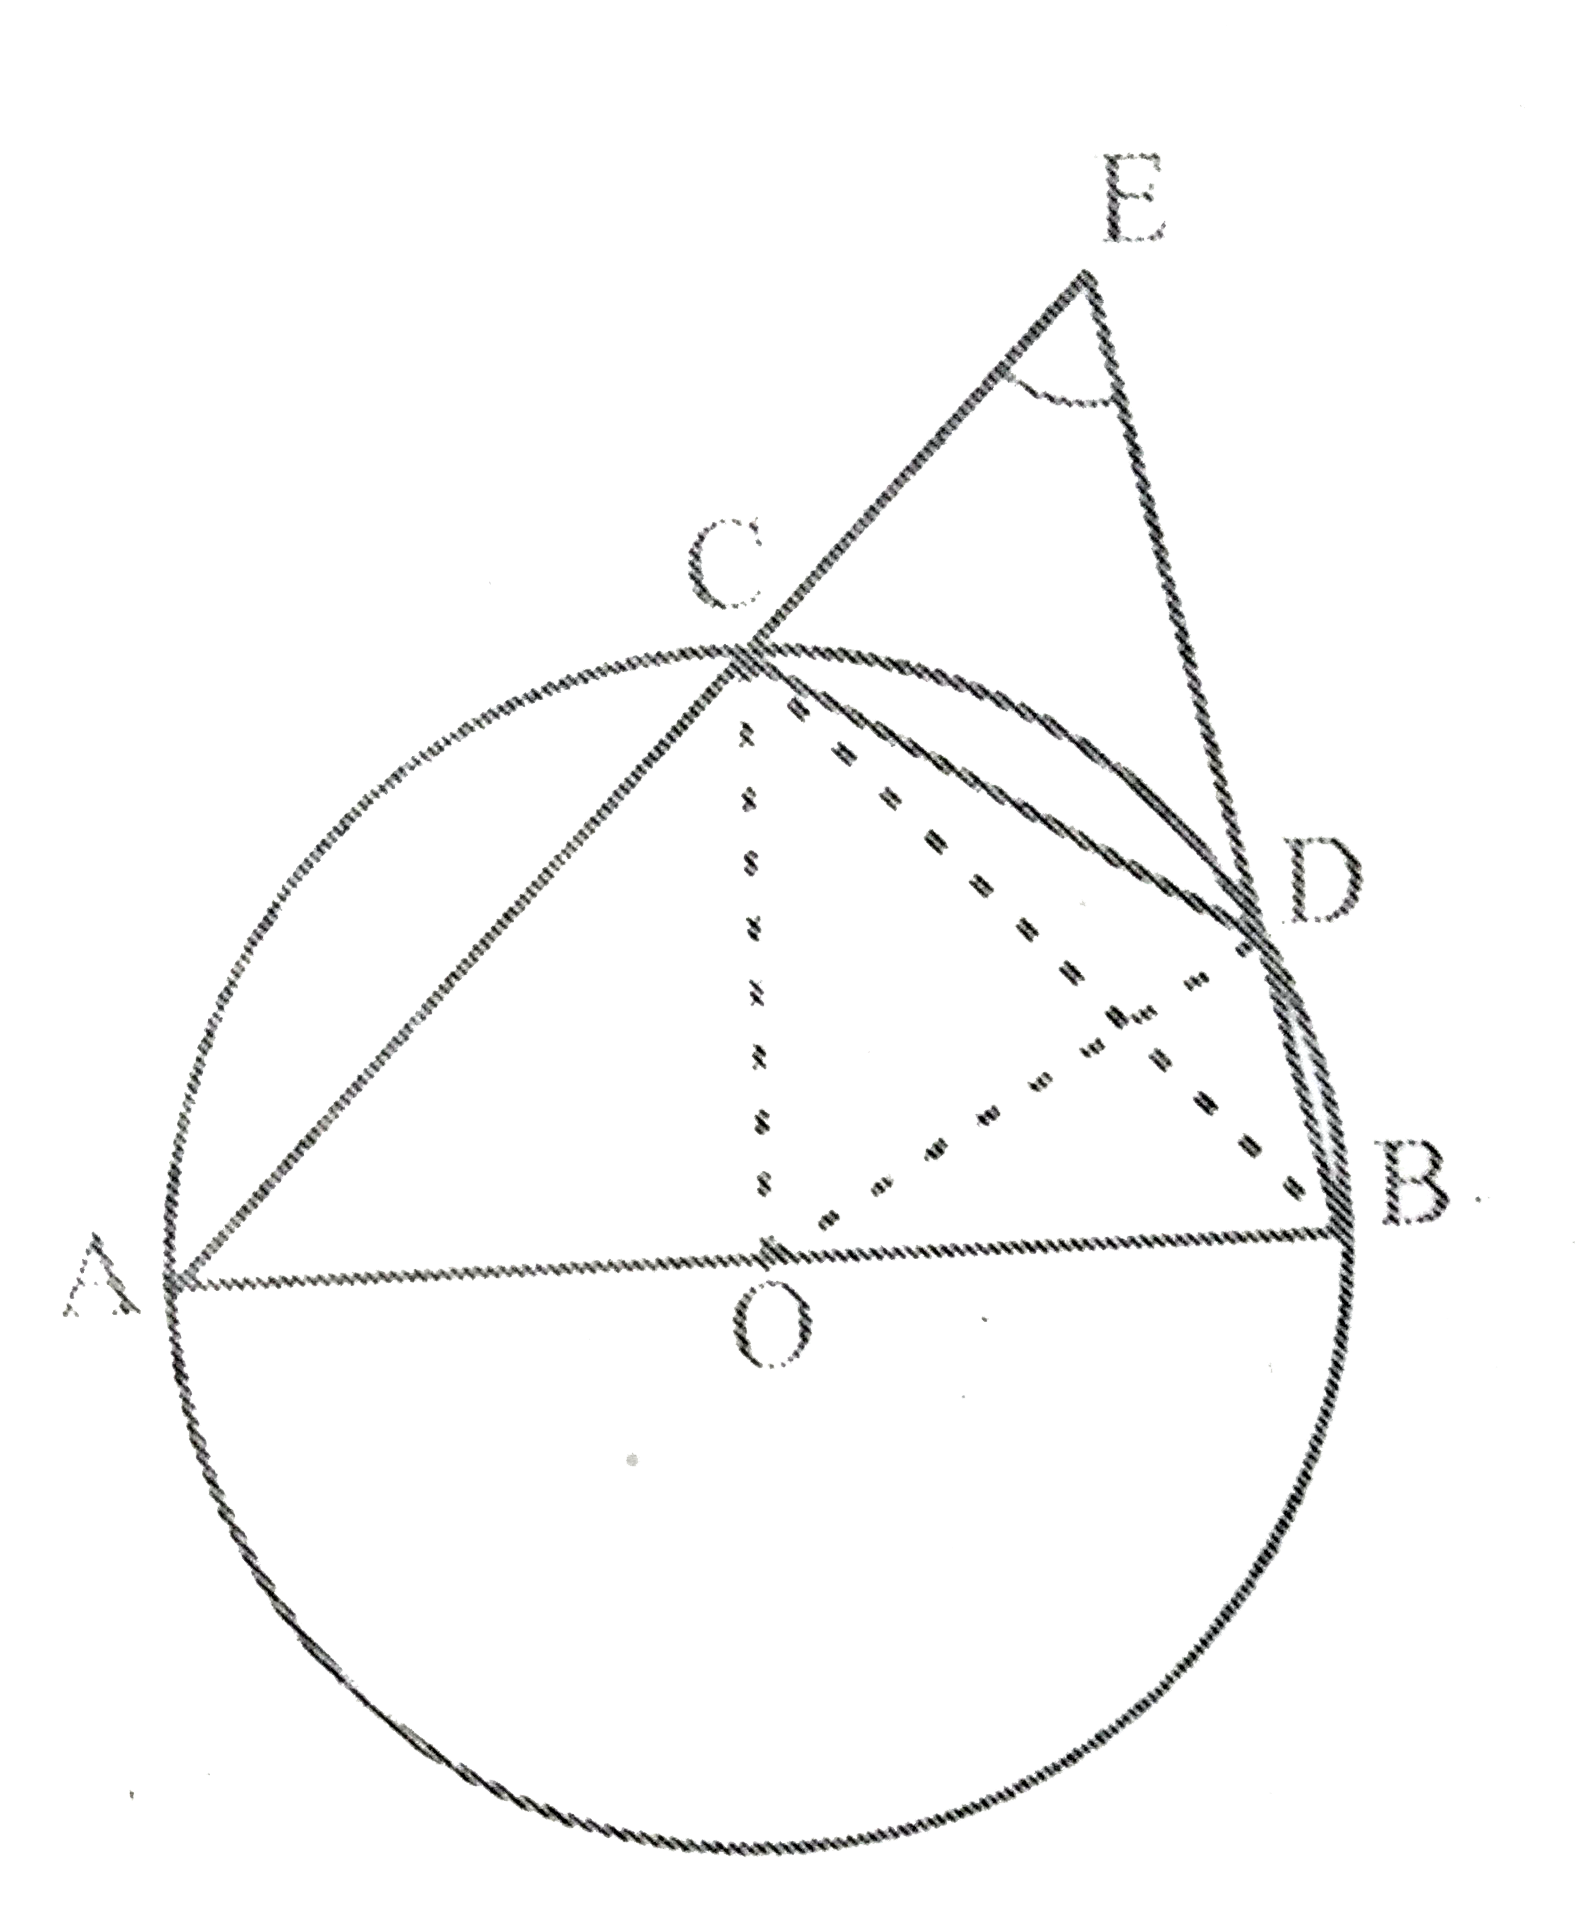 AB वृत्त का एक व्यास है और CD त्रिज्या के बराबर एक जीवा है । AC और BD बढ़ाए जाने पर एक बिंदु E पर मिलती है सिद्ध कीजिए कि angle AEB=60^(@) है